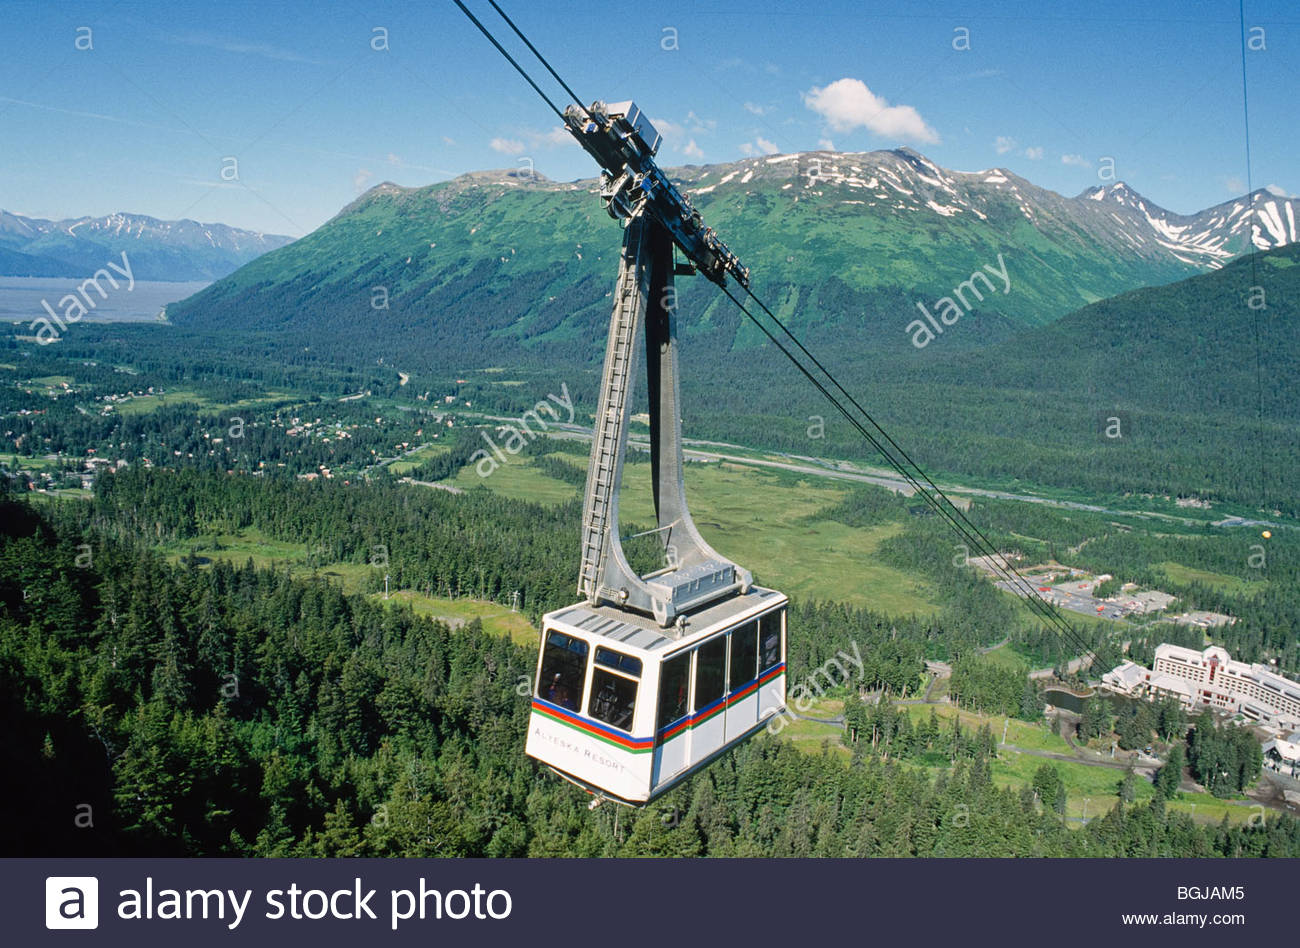 Alyeska Resort Tram